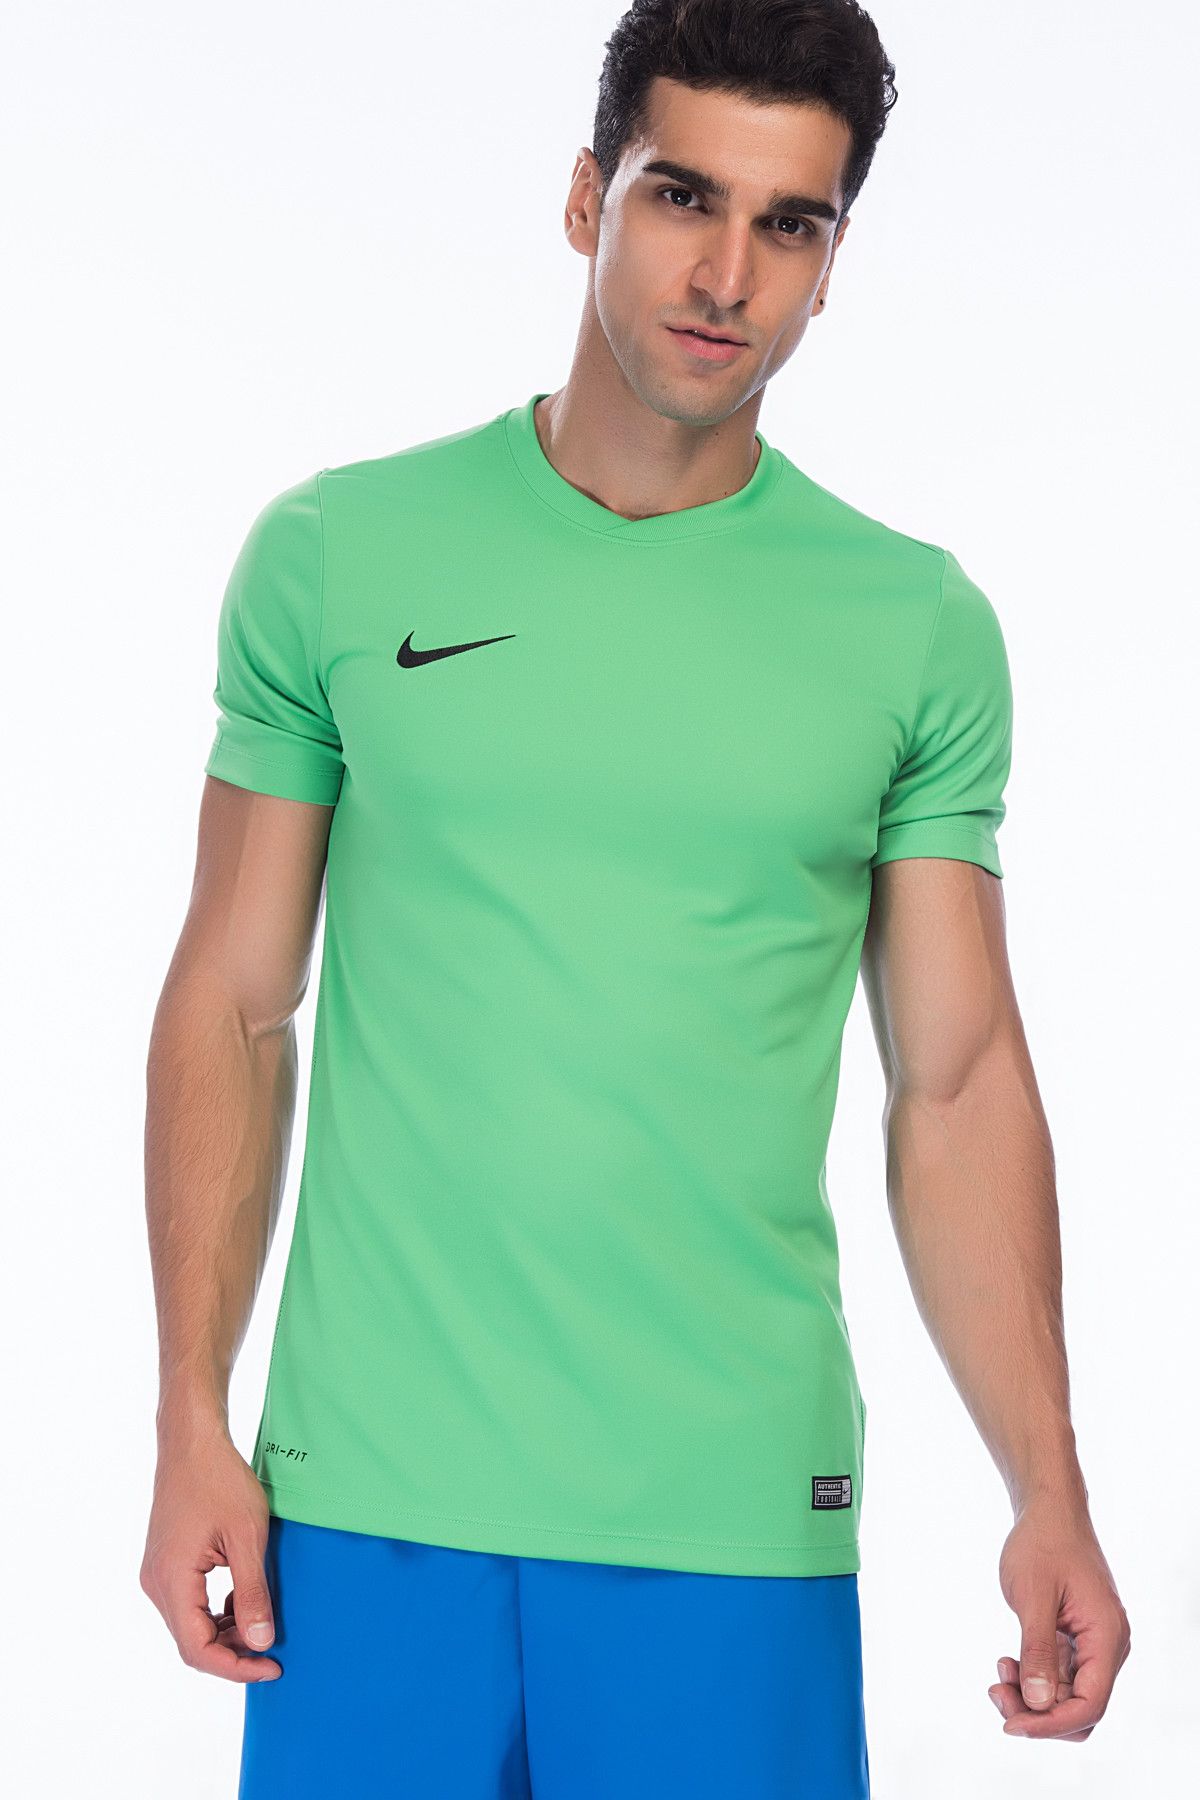 Nike Erkek T-shirt - Ss Park Vi Jsy - 725891-303